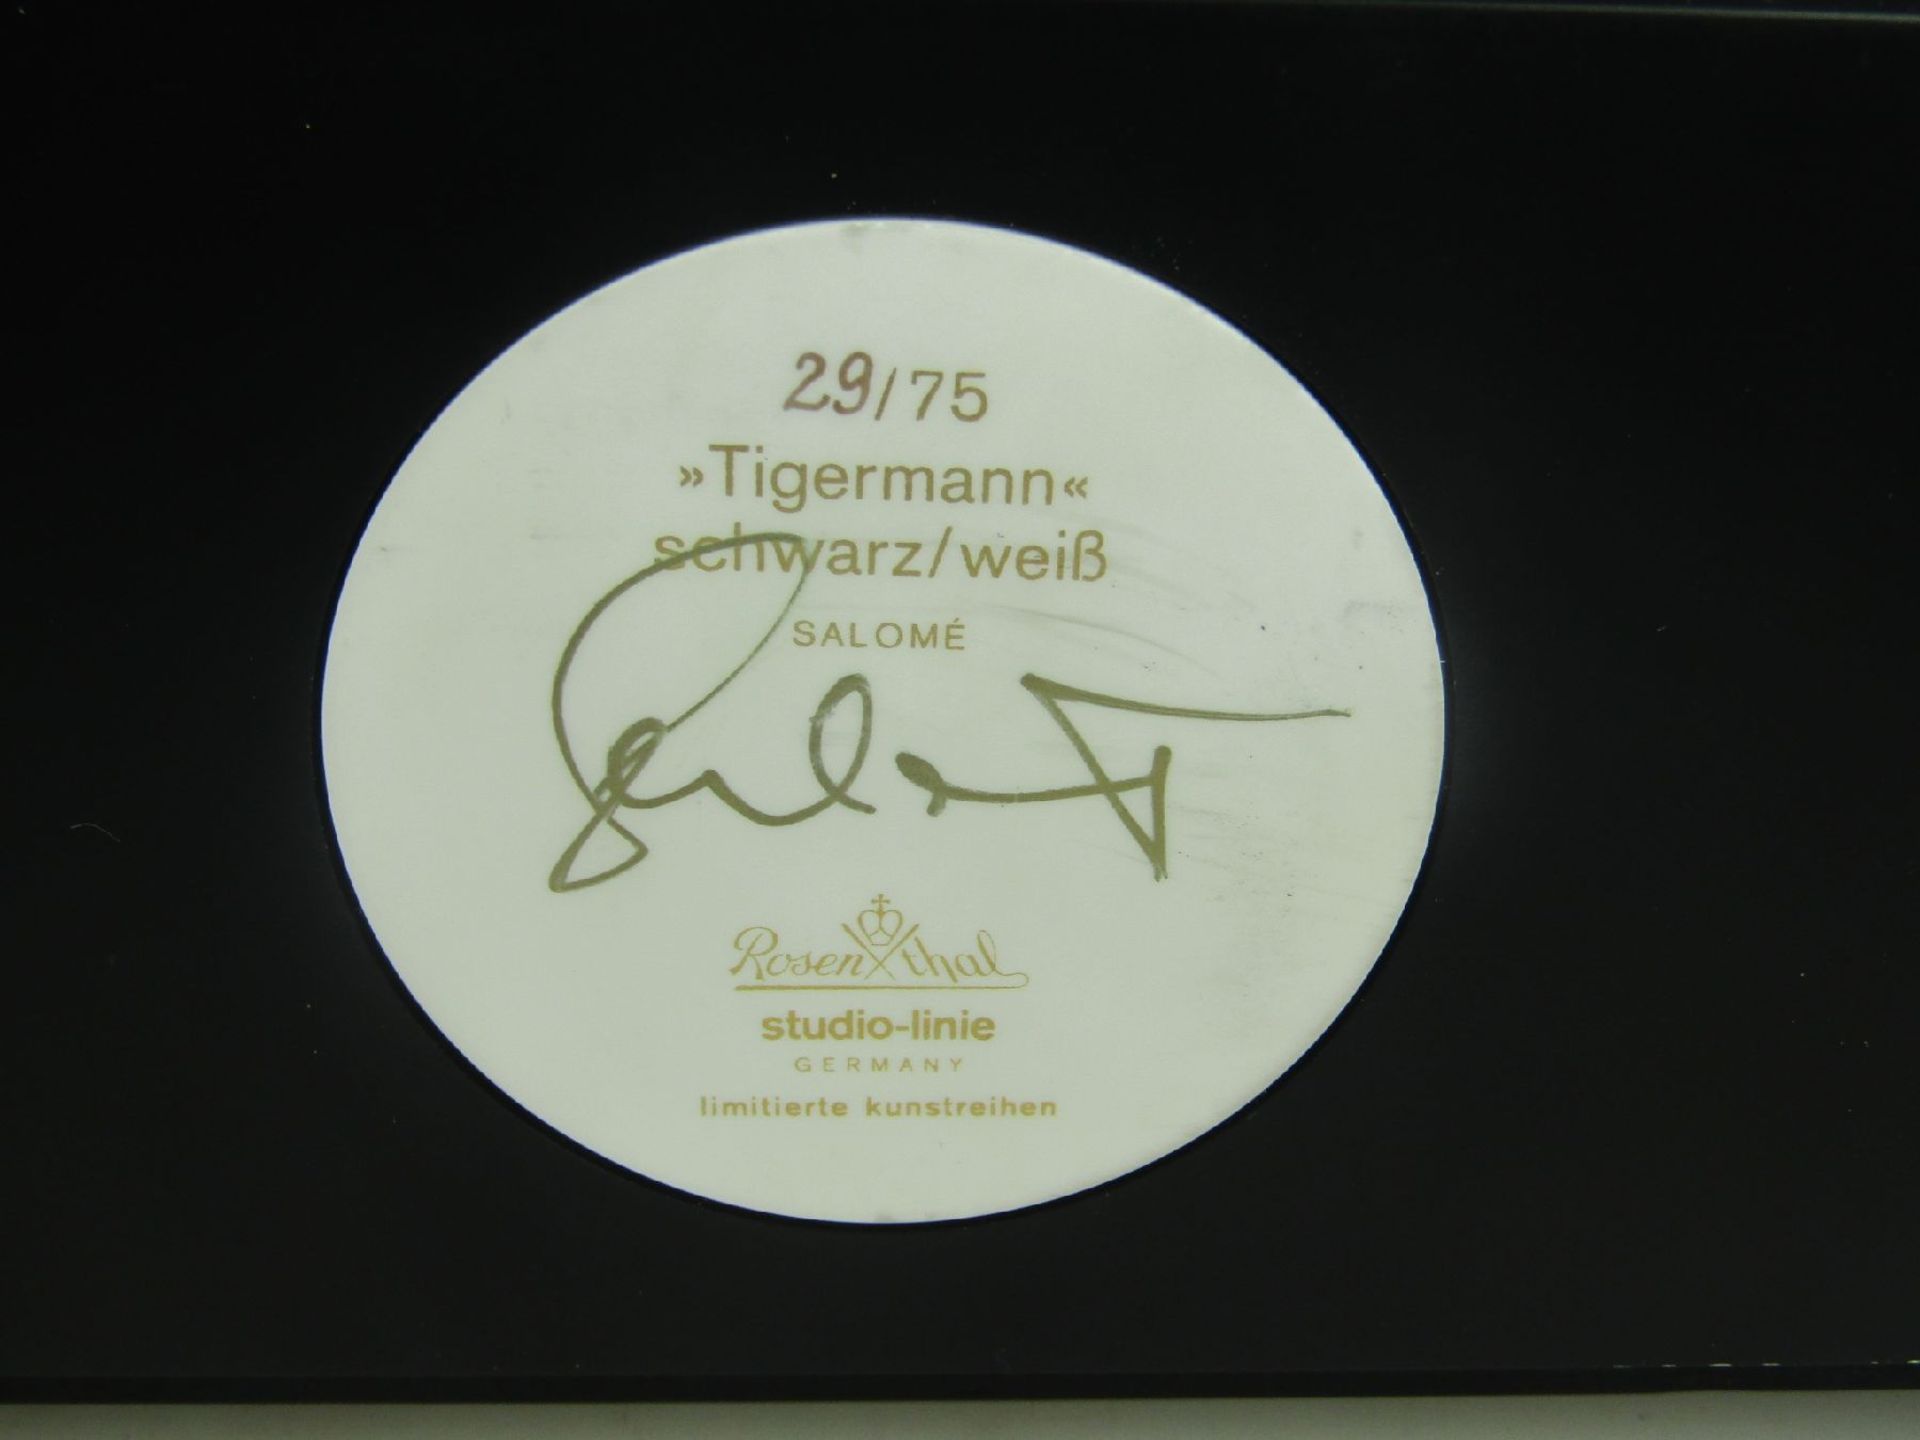 Porzellanobjekt Rosenthal "Tigermann" von Salomé, Porzellan, bunt bemalt, signiert und num. 29/75, - Bild 6 aus 7